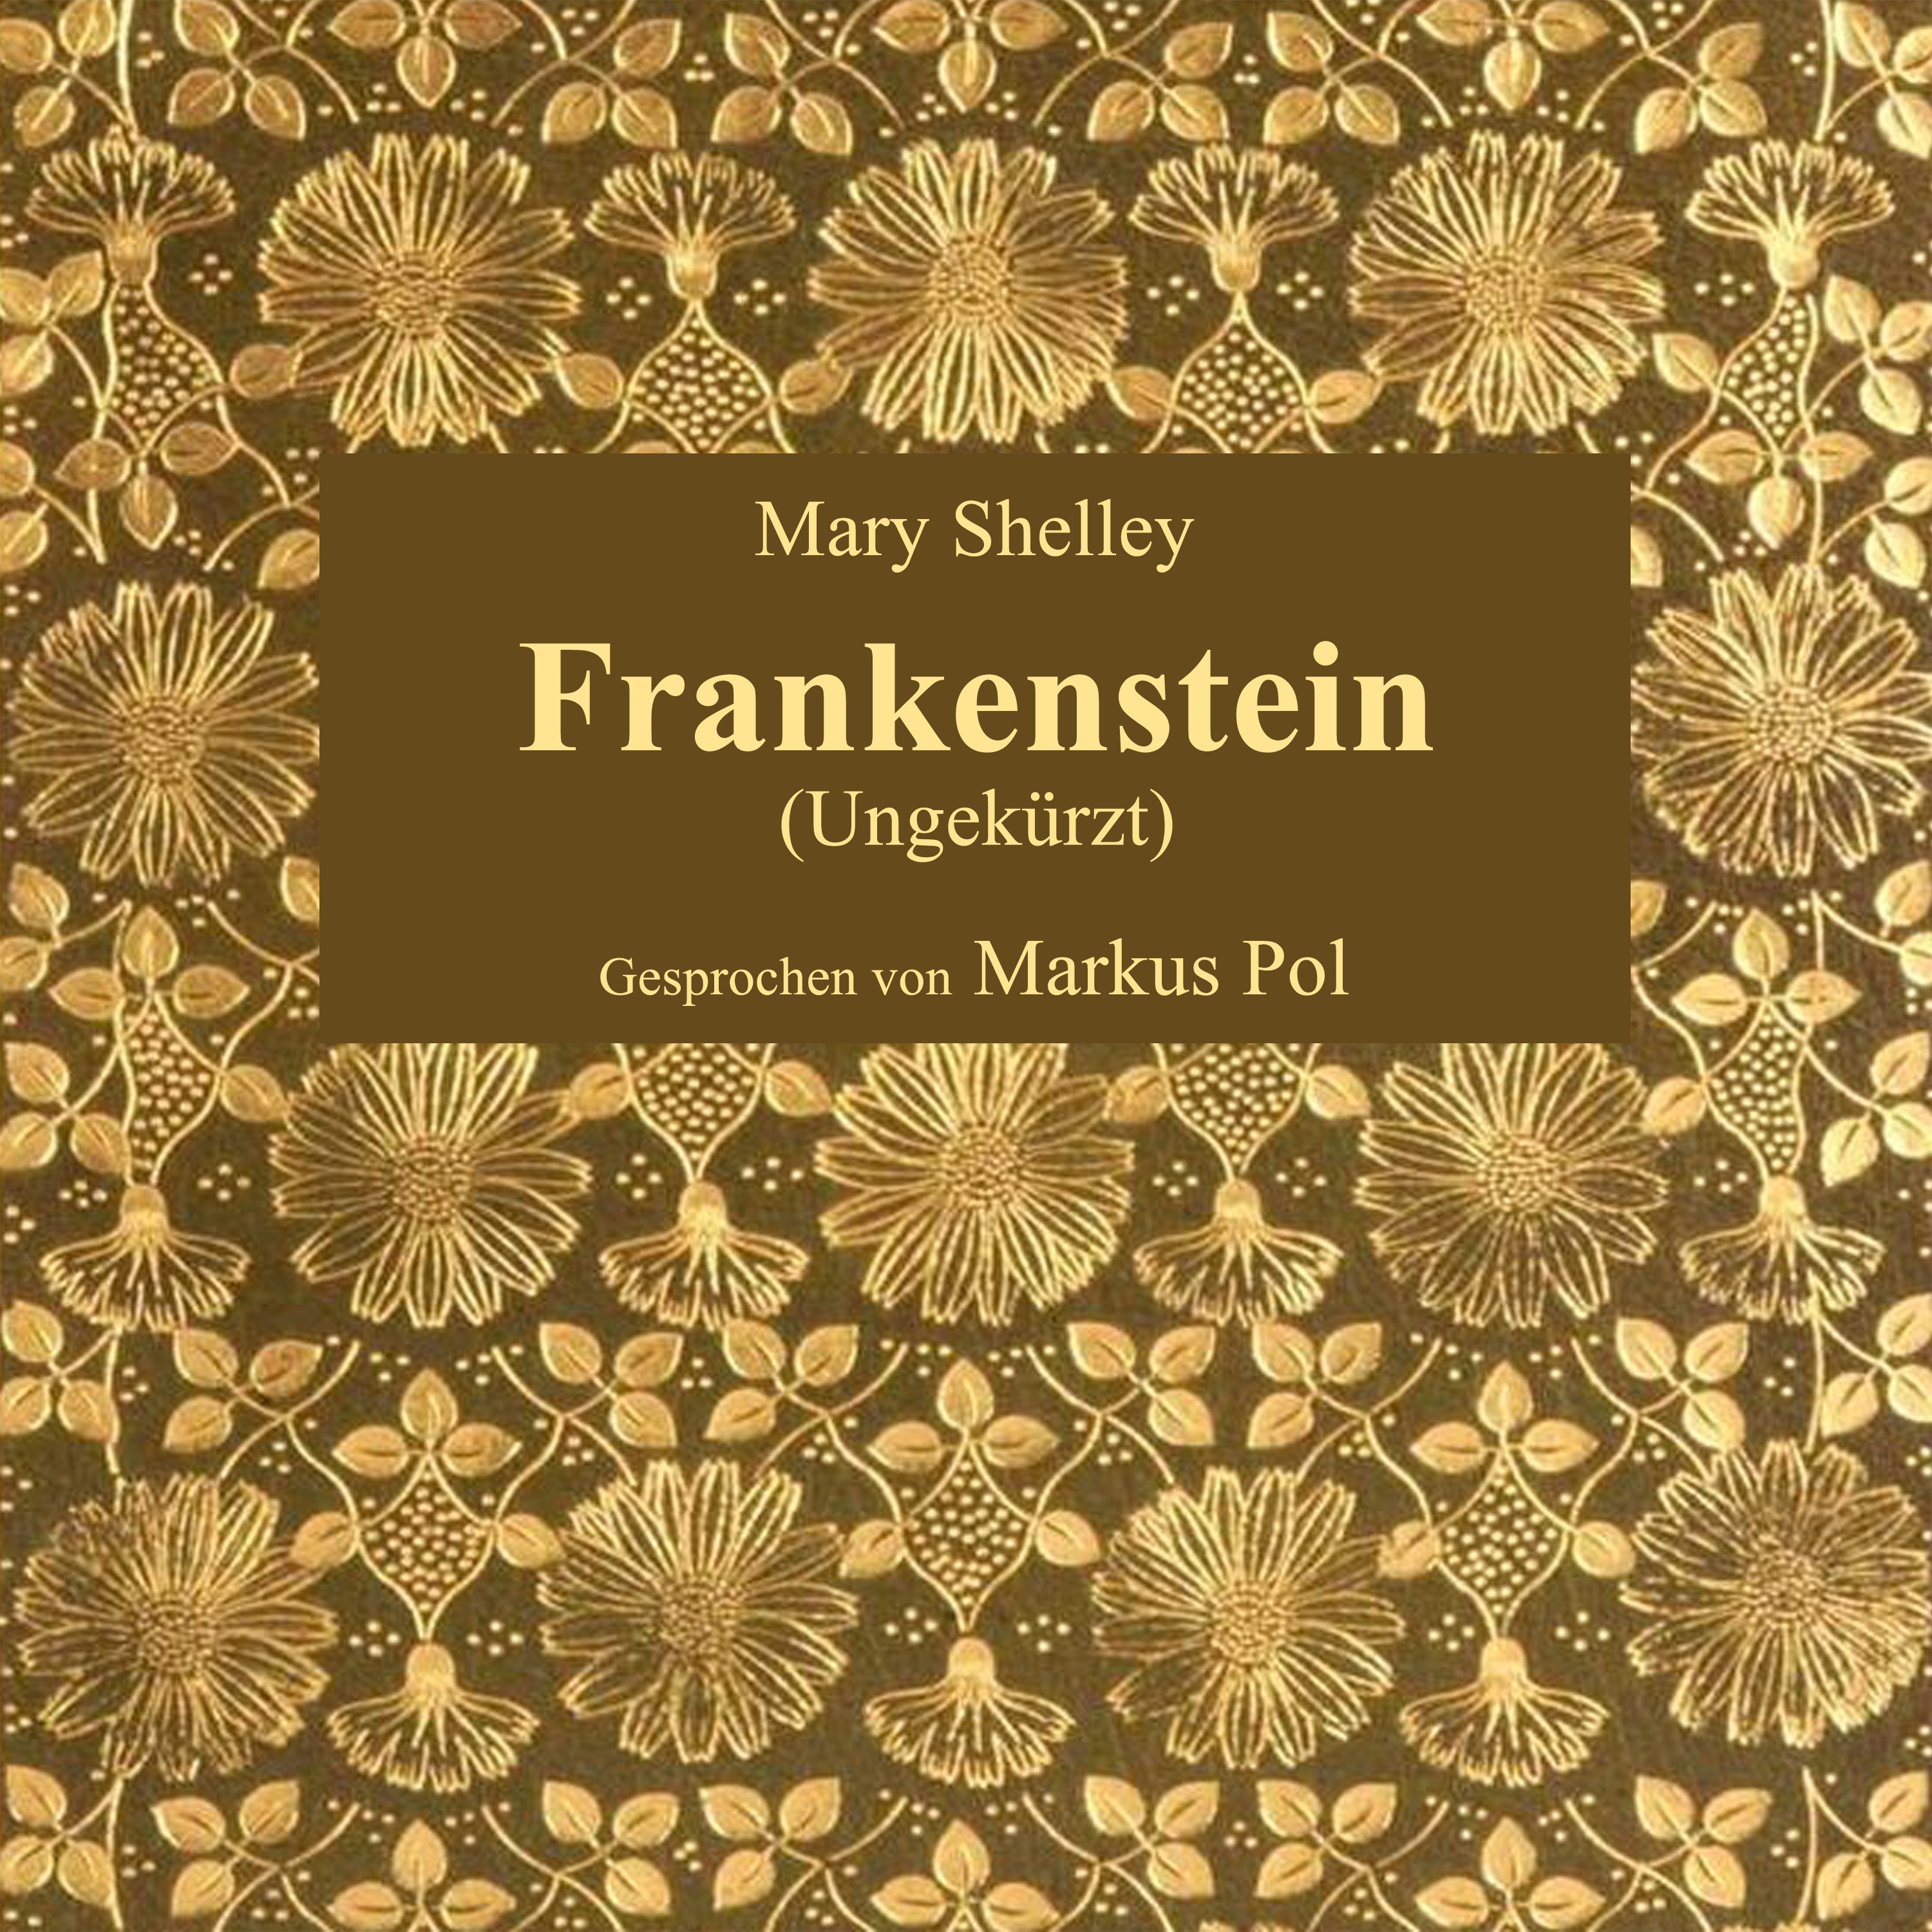 Kapitel 2: Frankenstein (Teil 19)